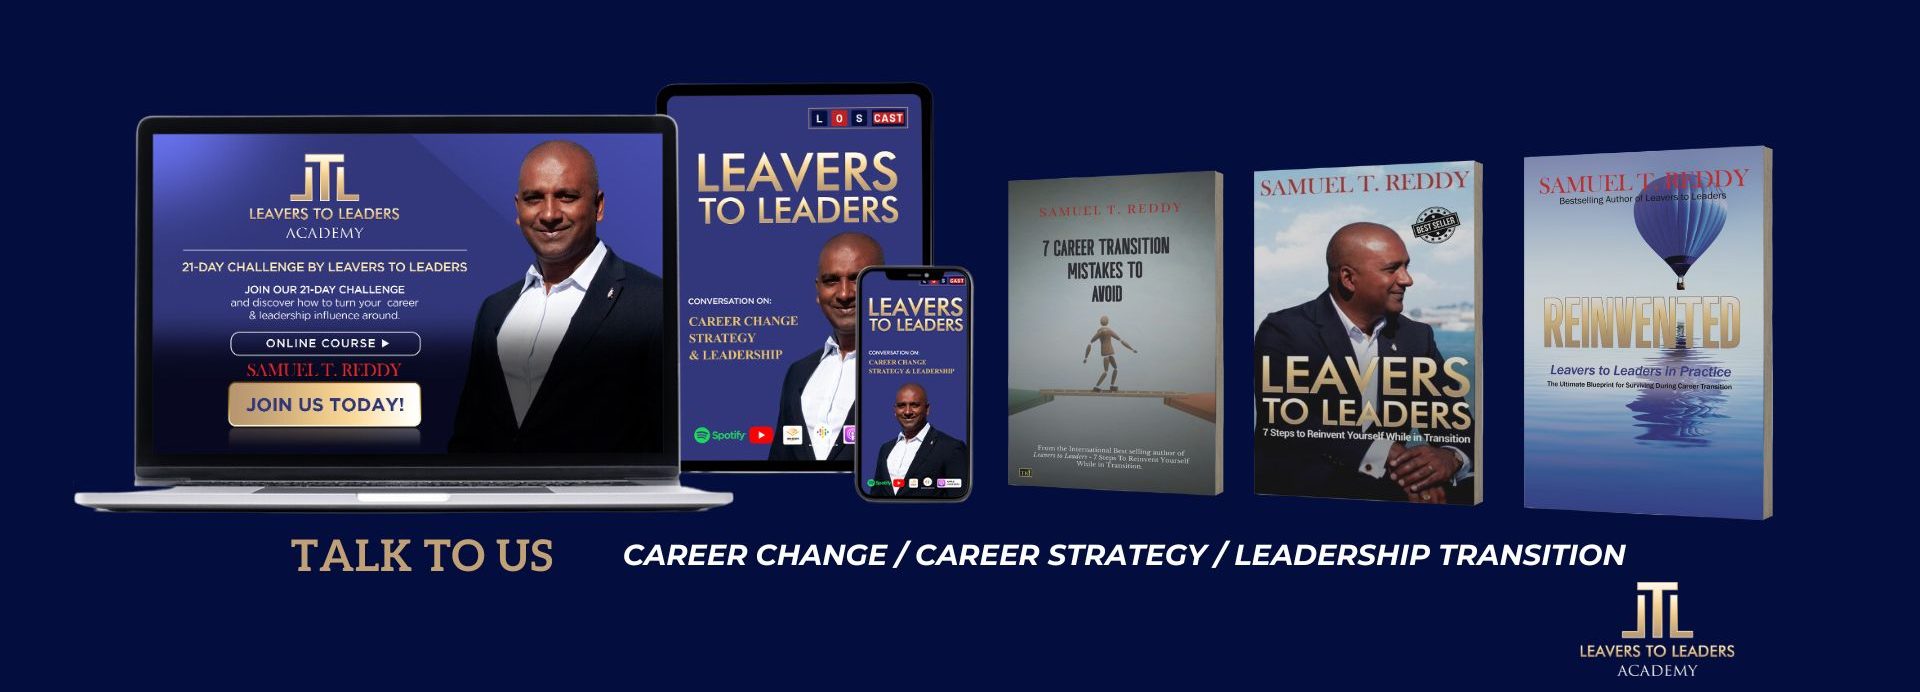 Leavers to Leaders